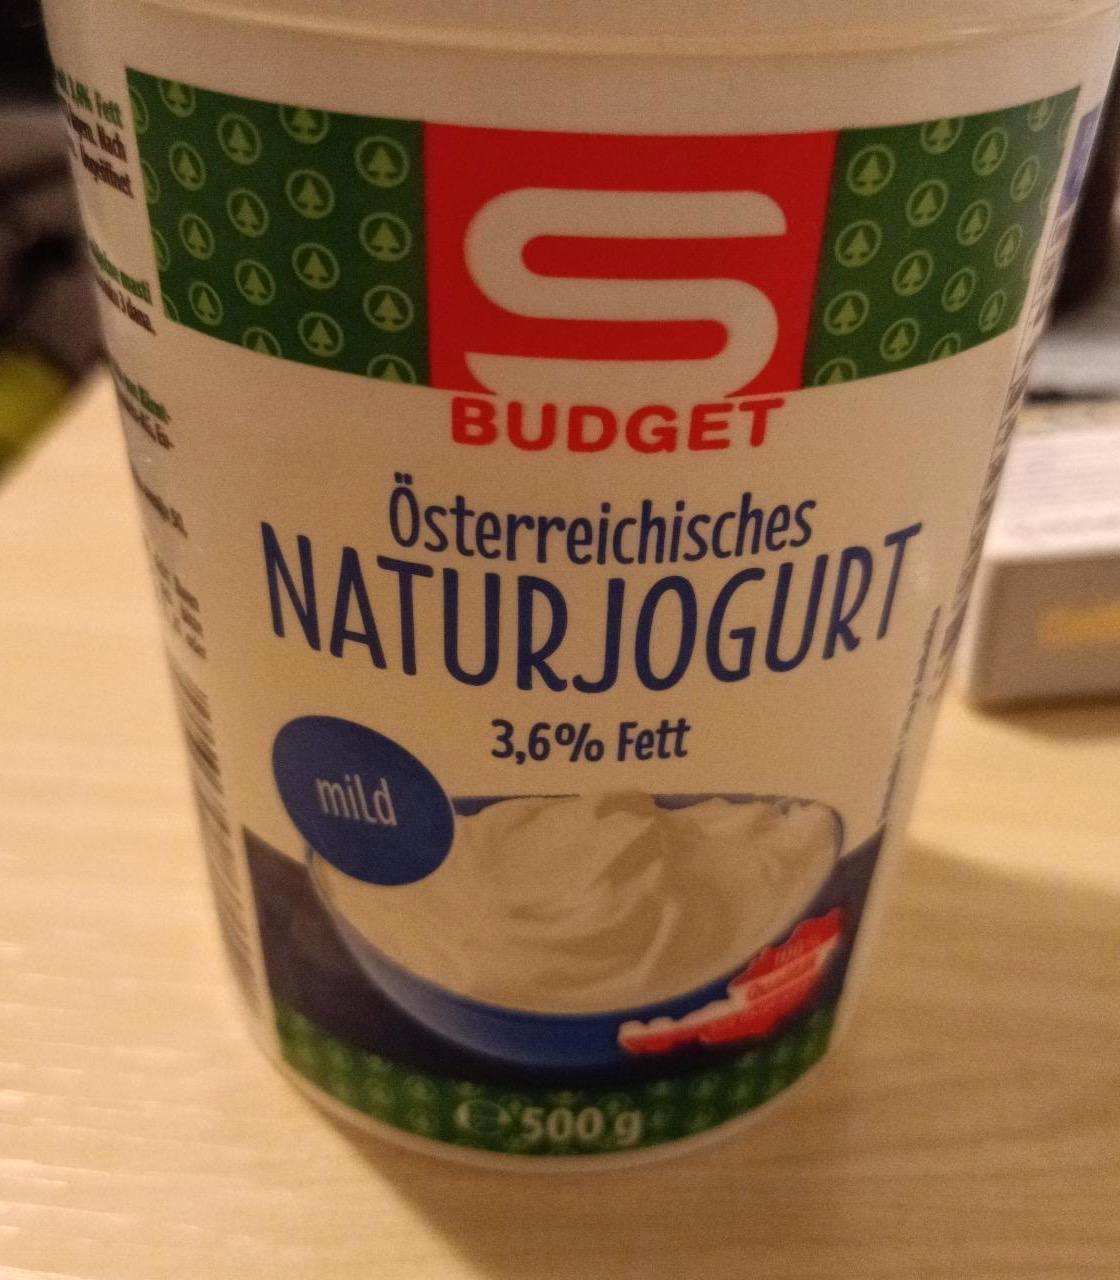 Fotografie - Österreichisches Naturjoghurt 3,6% Fett S Budget